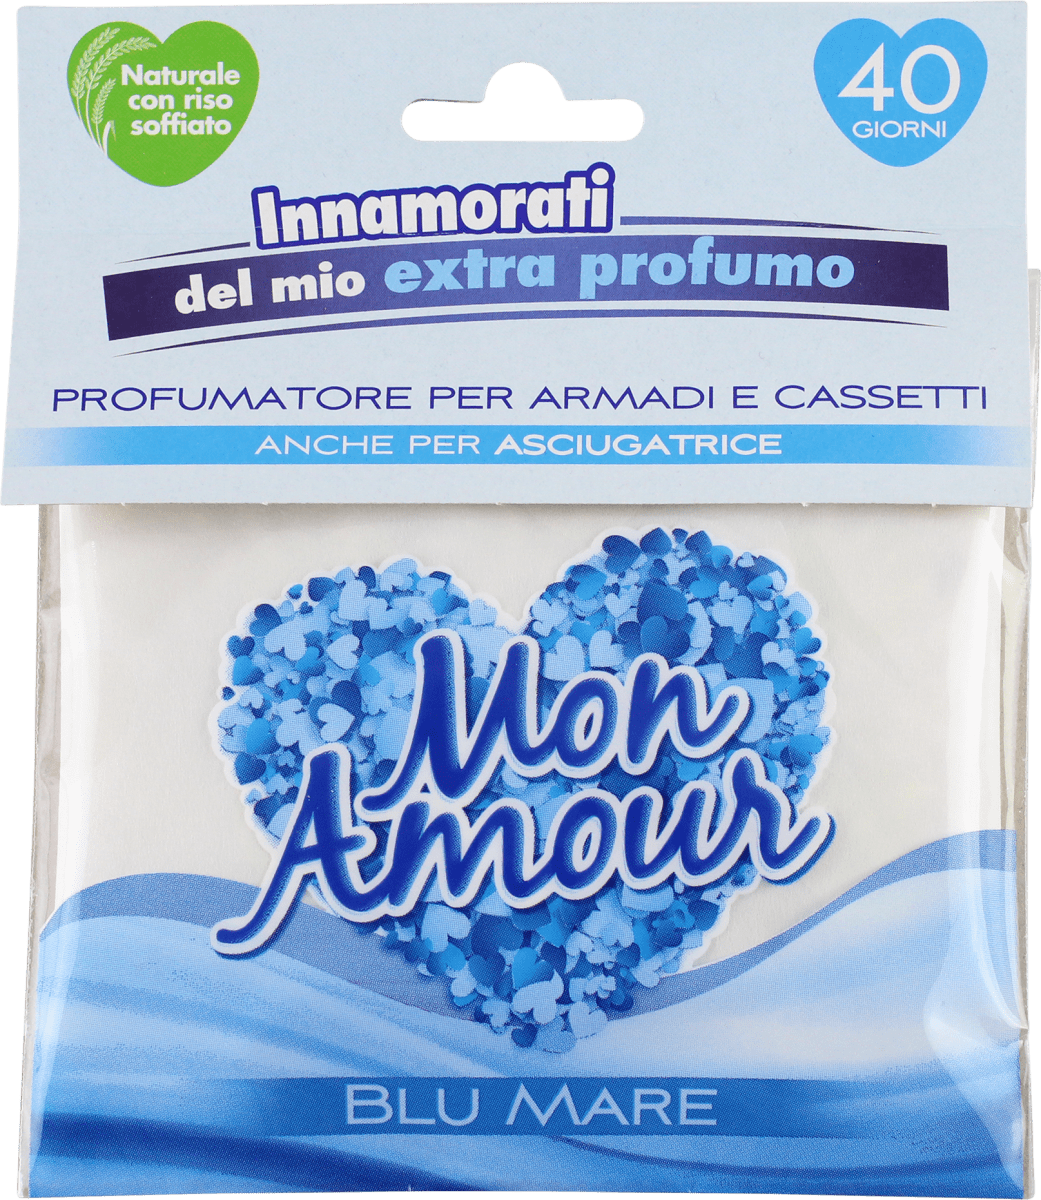 Don Algodon Ambients Deodorante per ambienti profumatore Armadio Buste  Profumate Don Algodon, Carta, Blu, Confezione da 4 x 13 g